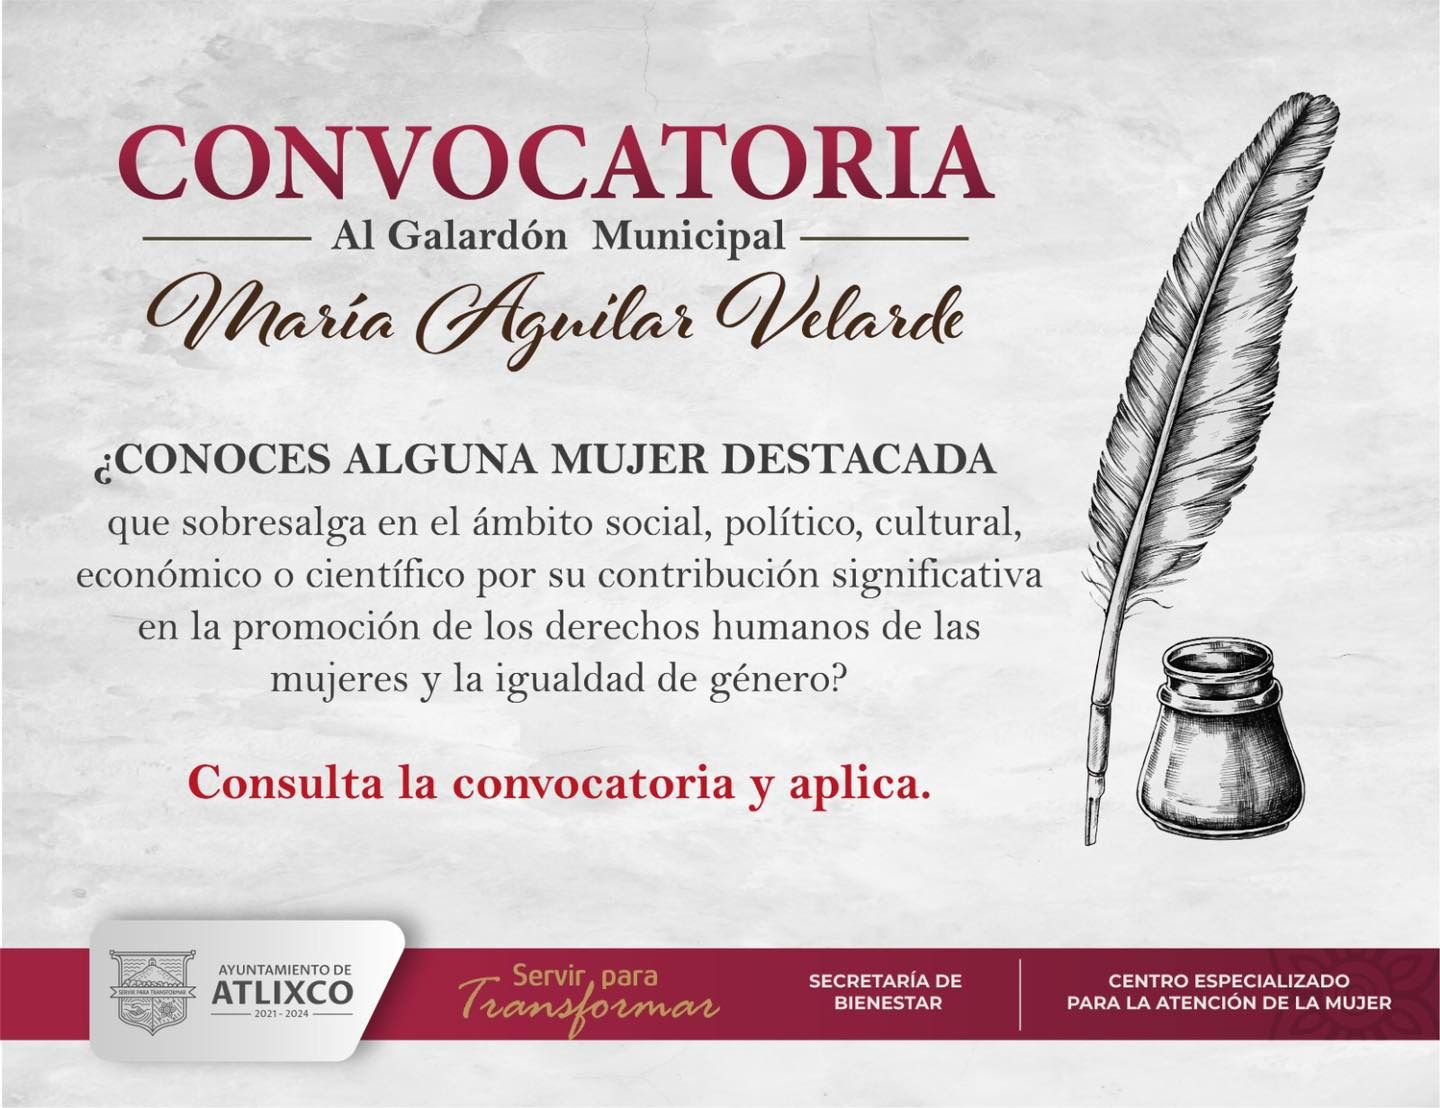 Atlixco reconocerá a una mujer con la presea “María Aguilar Valerde” por su contribución a la igualdad de género